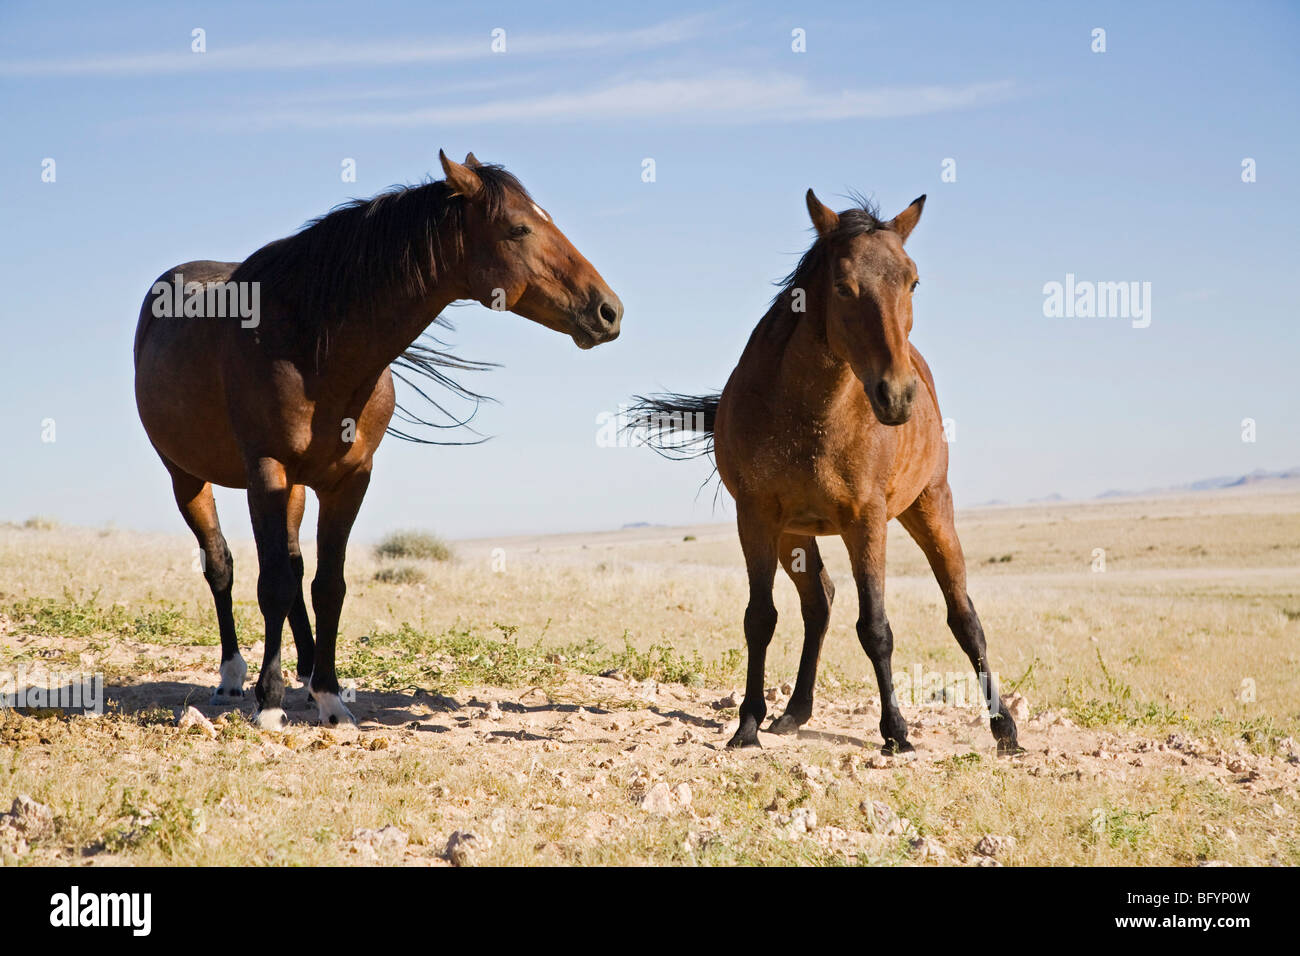 Wilde Pferde, Pferde von der ehemaligen deutschen Schutztruppe Schutztruppen in Namibia, Afrika Stockfoto